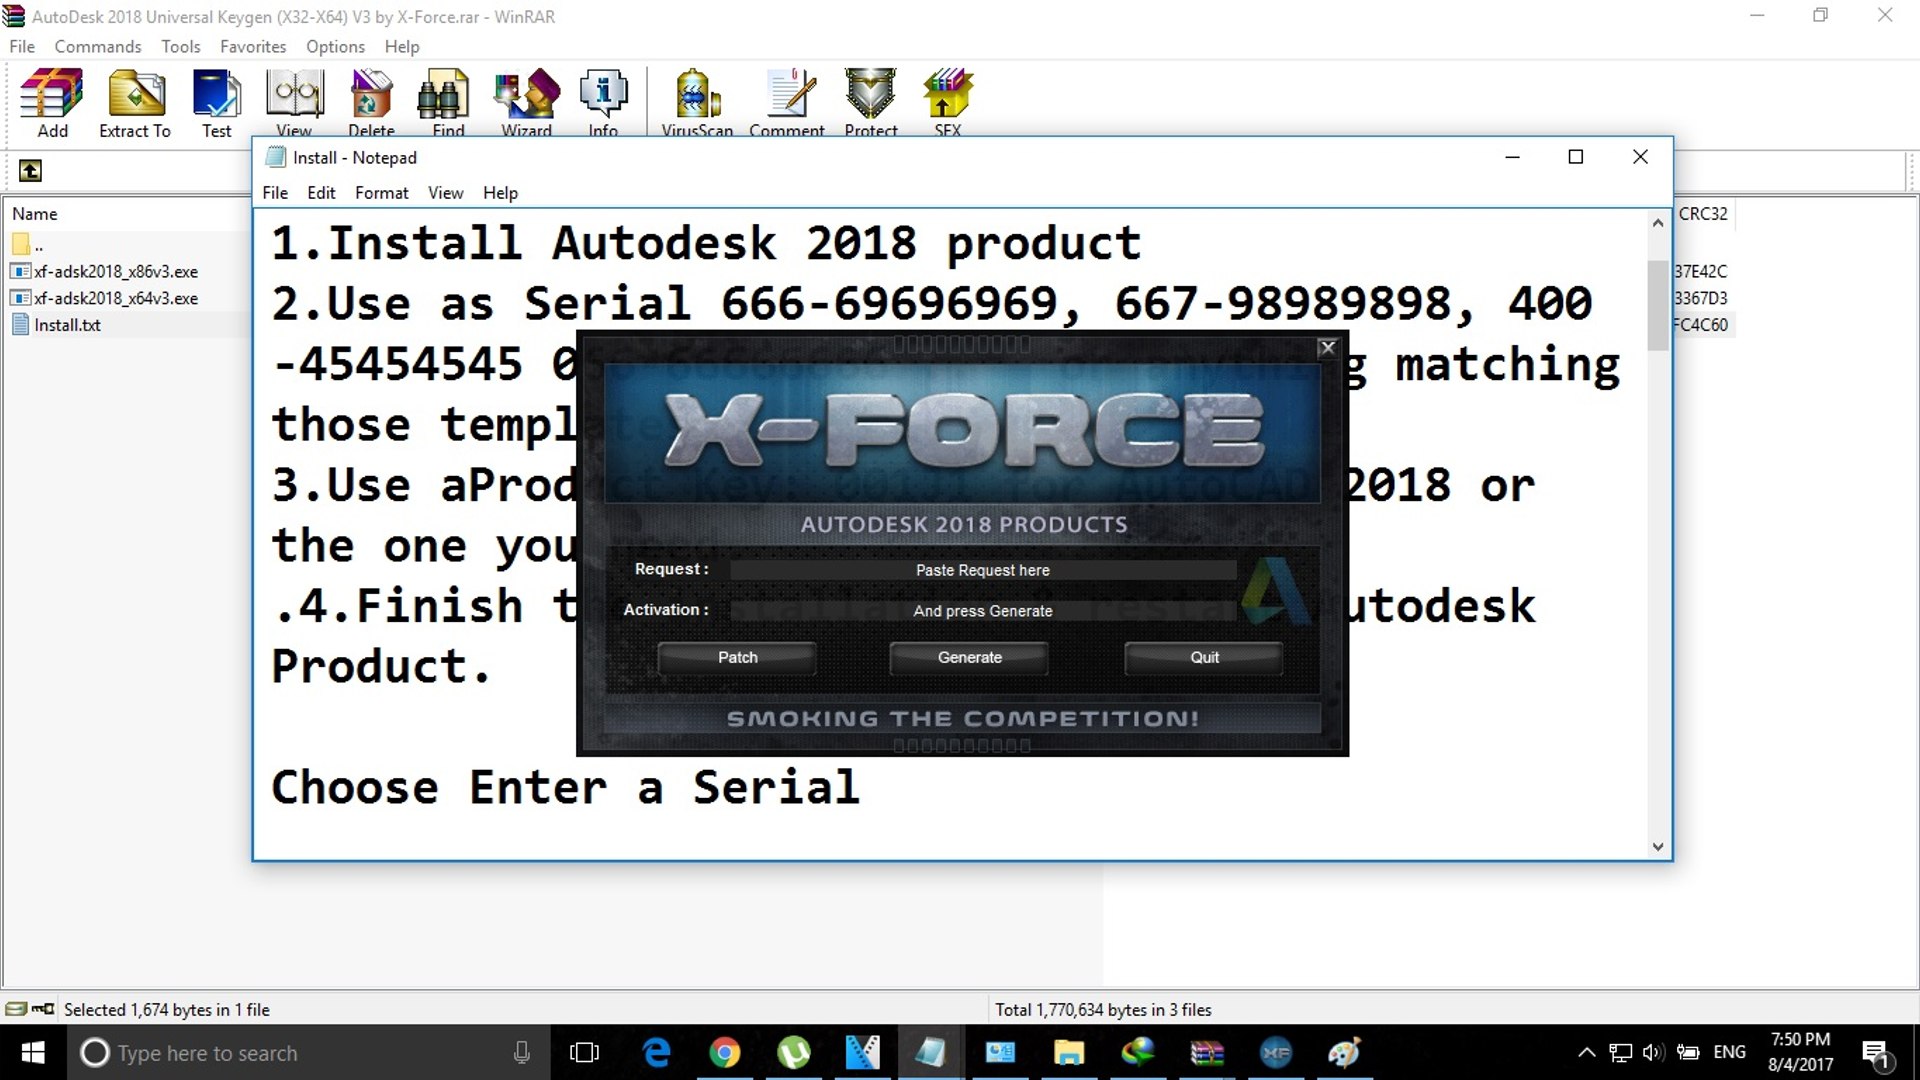 xforce keygen 2014 64 bit free download